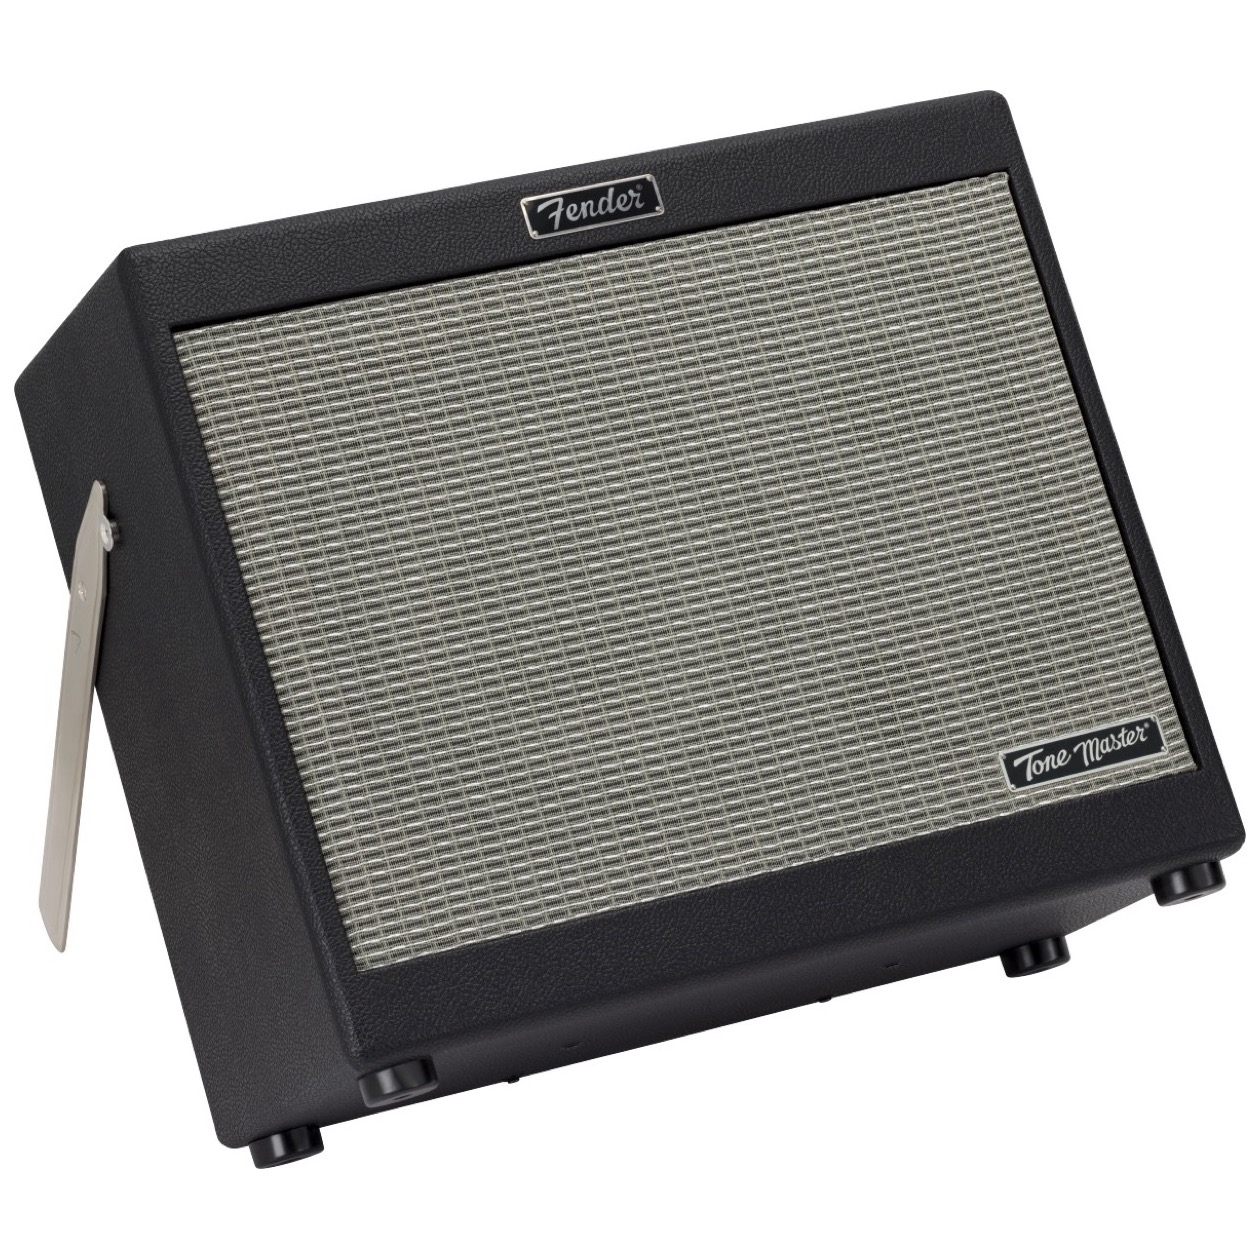 Fender Tone Master FR 10 / FR10 Full Range Flat Response Powered Speaker 1000 Watt, 1 x 10" Speaker